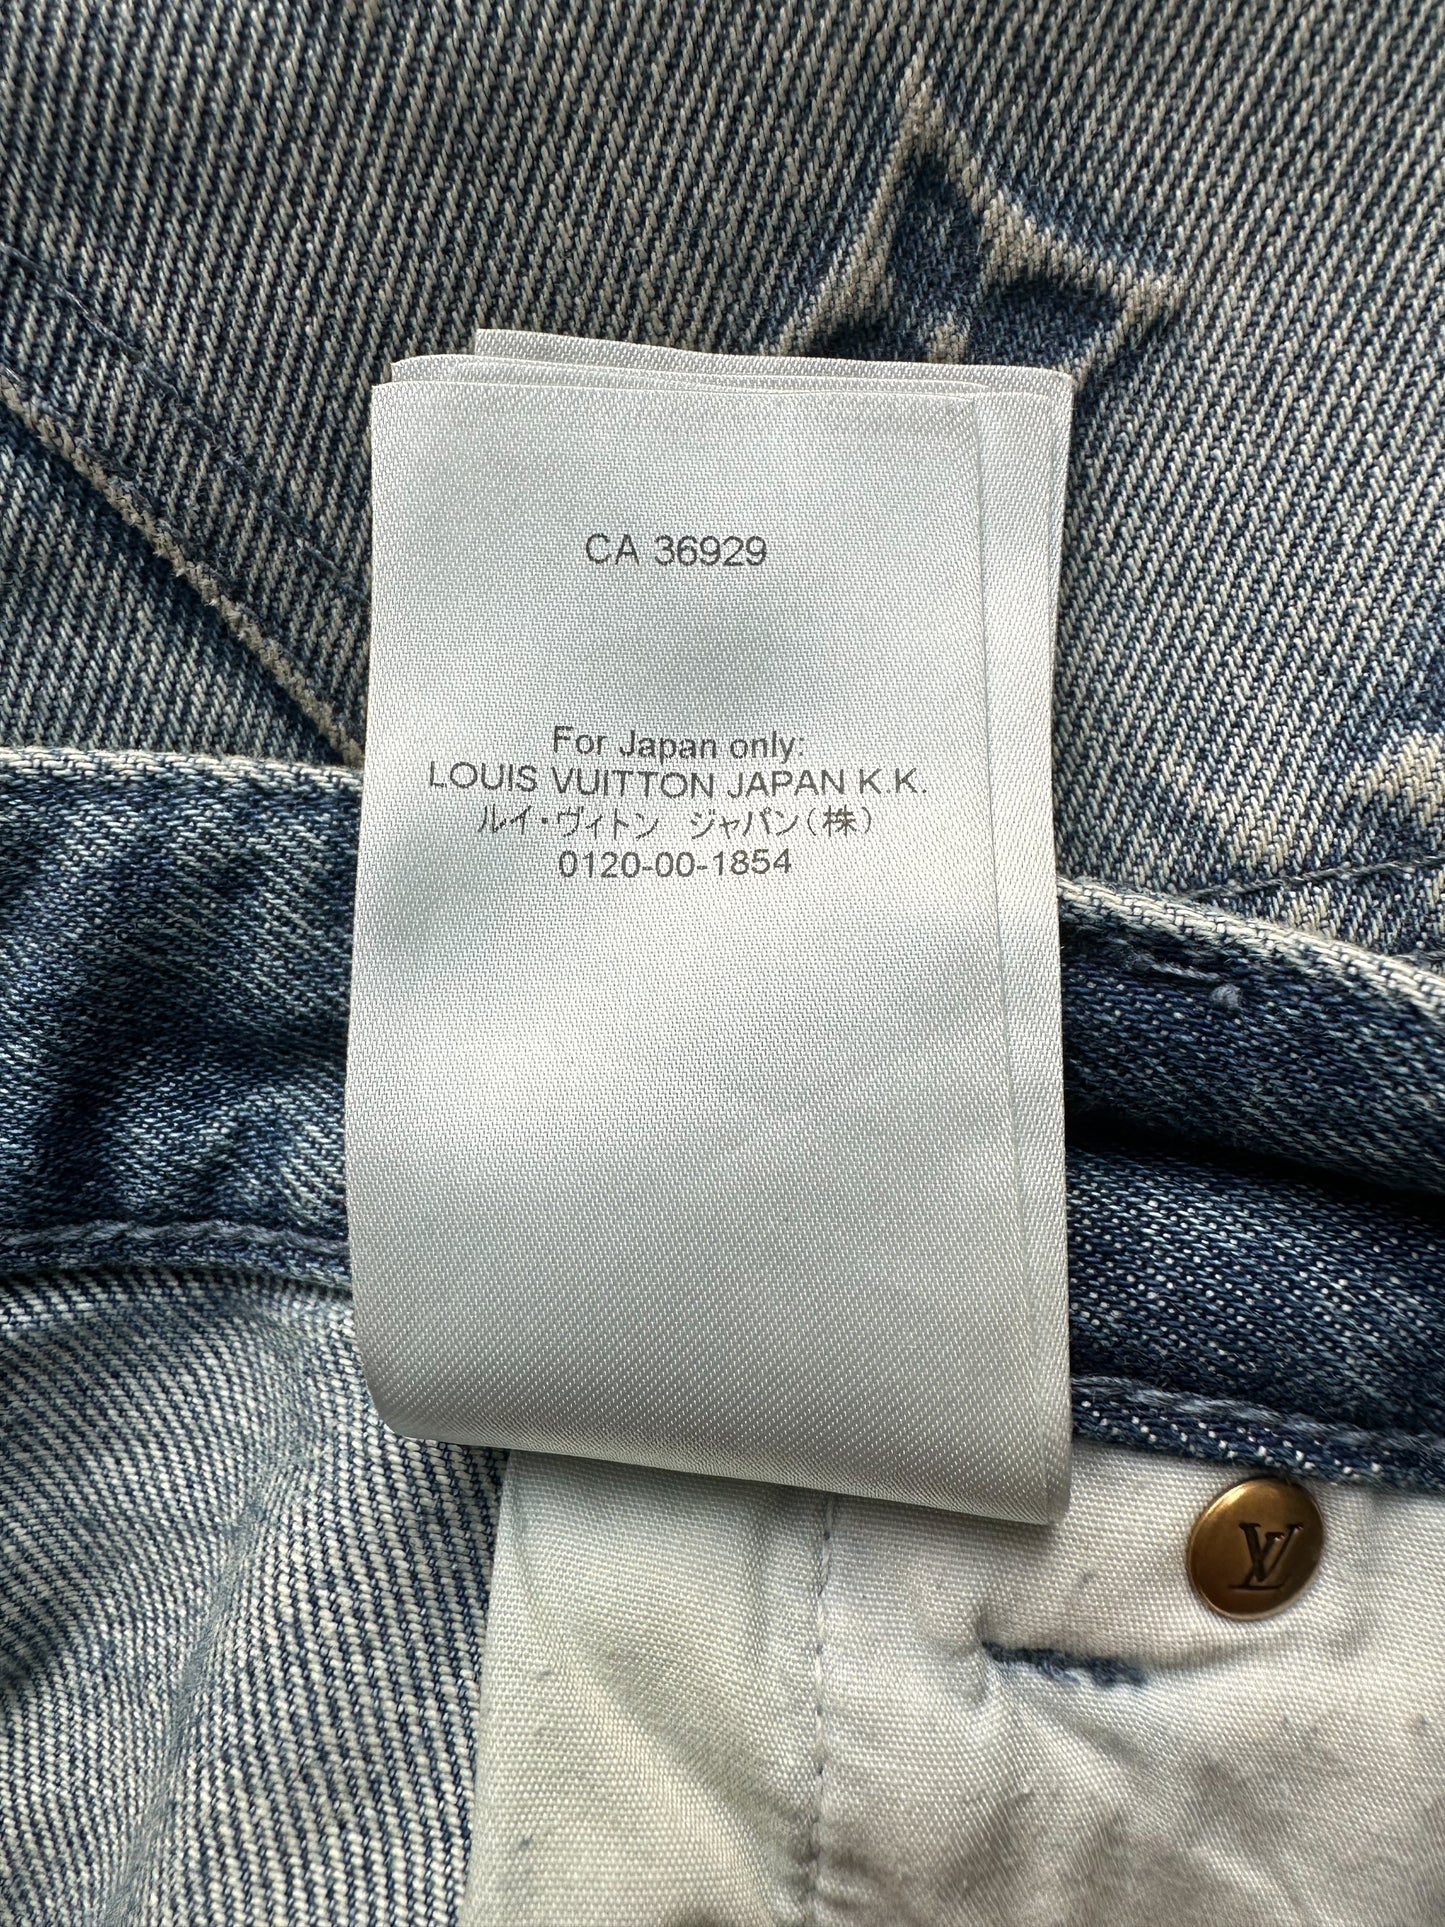 Louis Vuitton 2022 Floral Carpenter Denim Shorts - Blue, 14 Rise Shorts,  Clothing - LOU738777